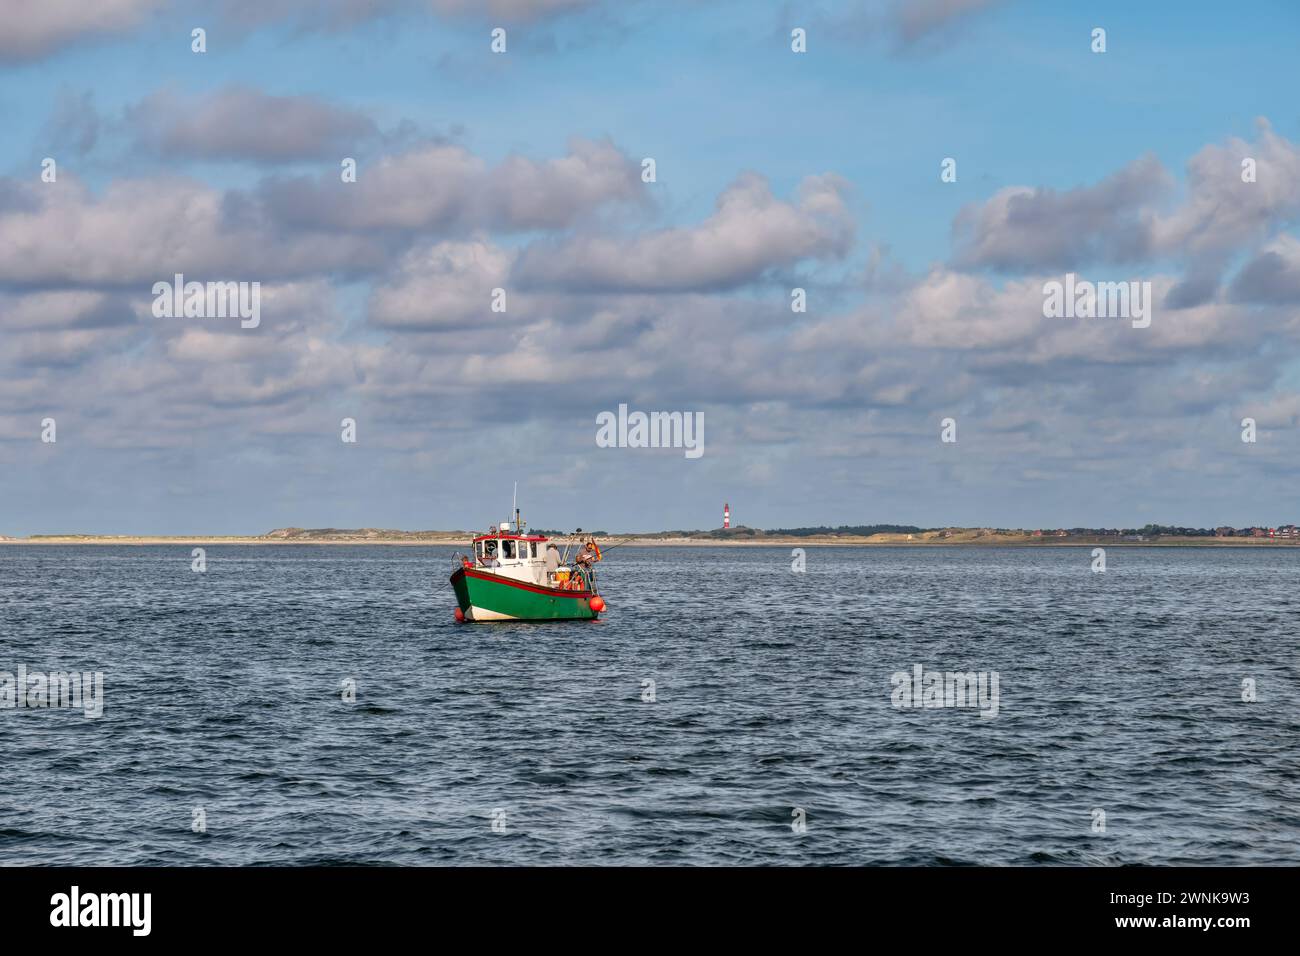 Menschen fischen auf einem kleinen Boot im Wattenmeer in der Nähe der Amrumküste und des Leuchtturms, Nordfriesland, Schleswig-Holstein, Deutschland Stockfoto